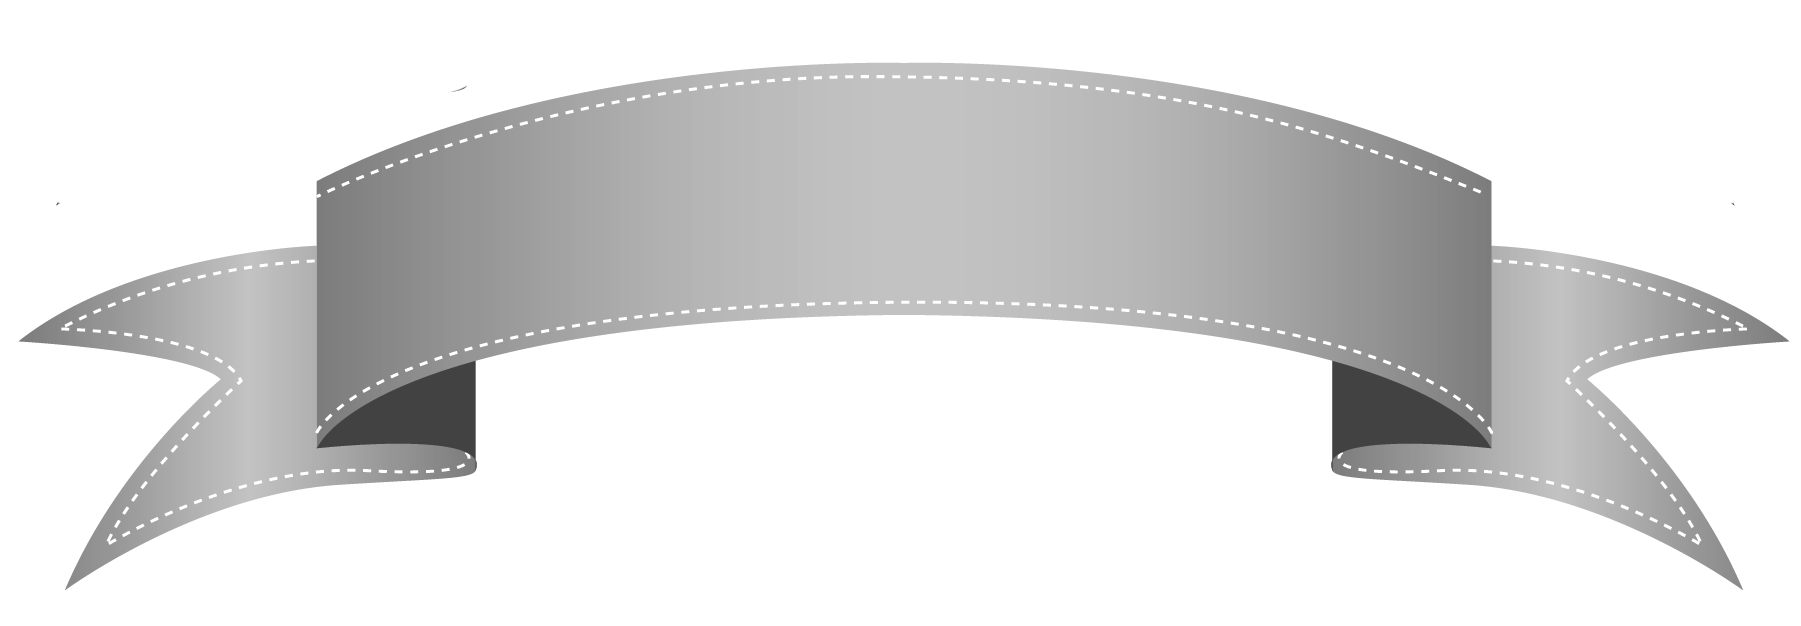 Bannière grise PNG Image Transparente